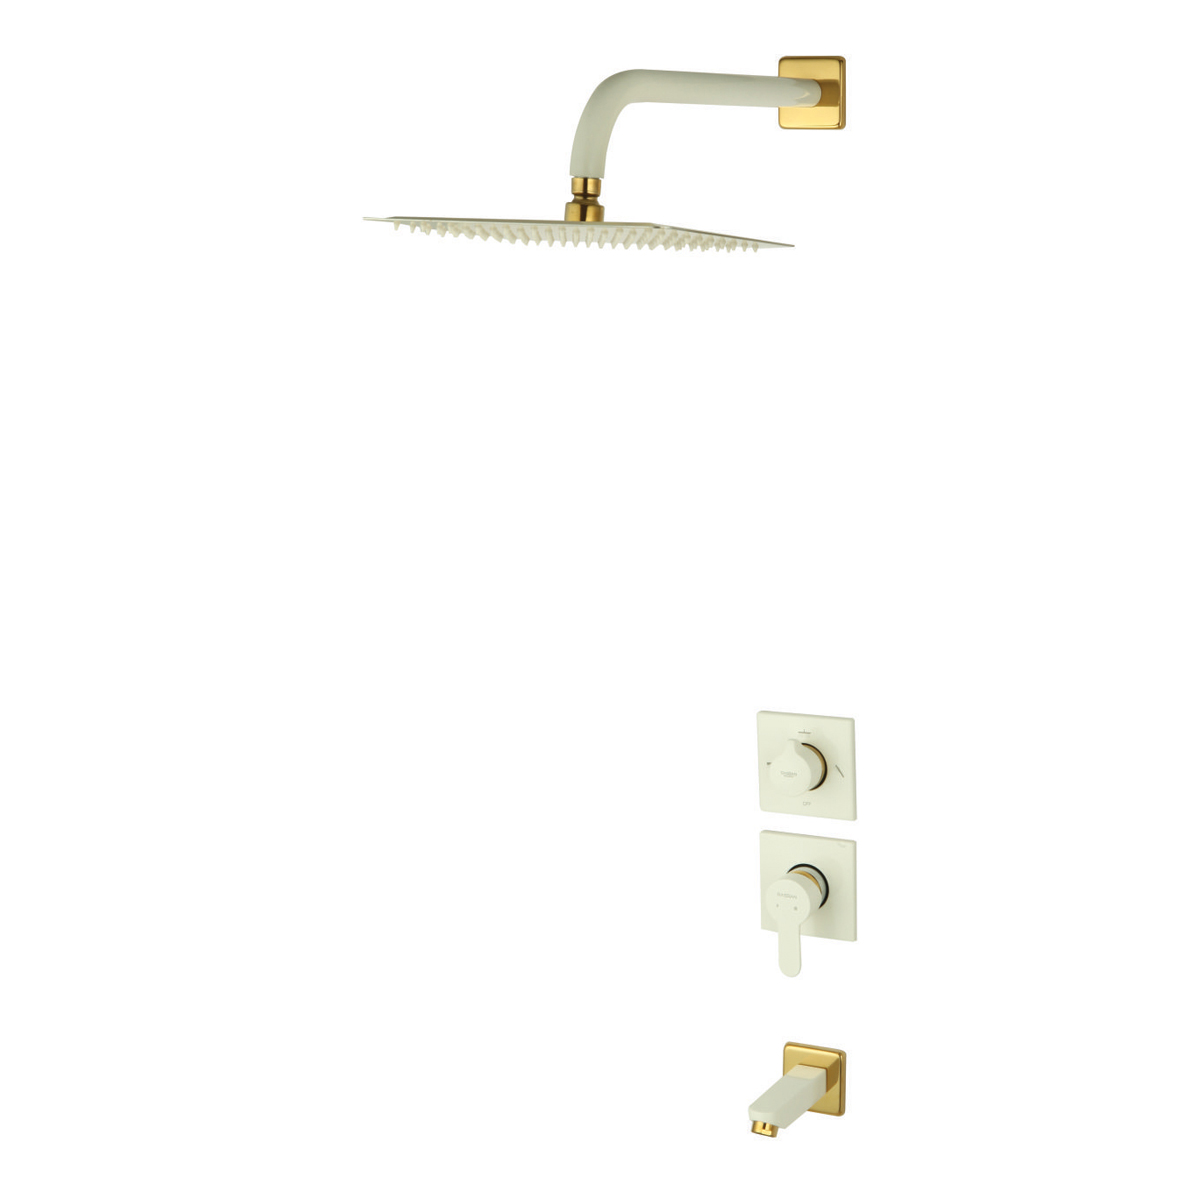 ملحقات شیر حمام و مکانیزم توکار ویوات راسان مدل فلت کلاس (2) سفید طلایی